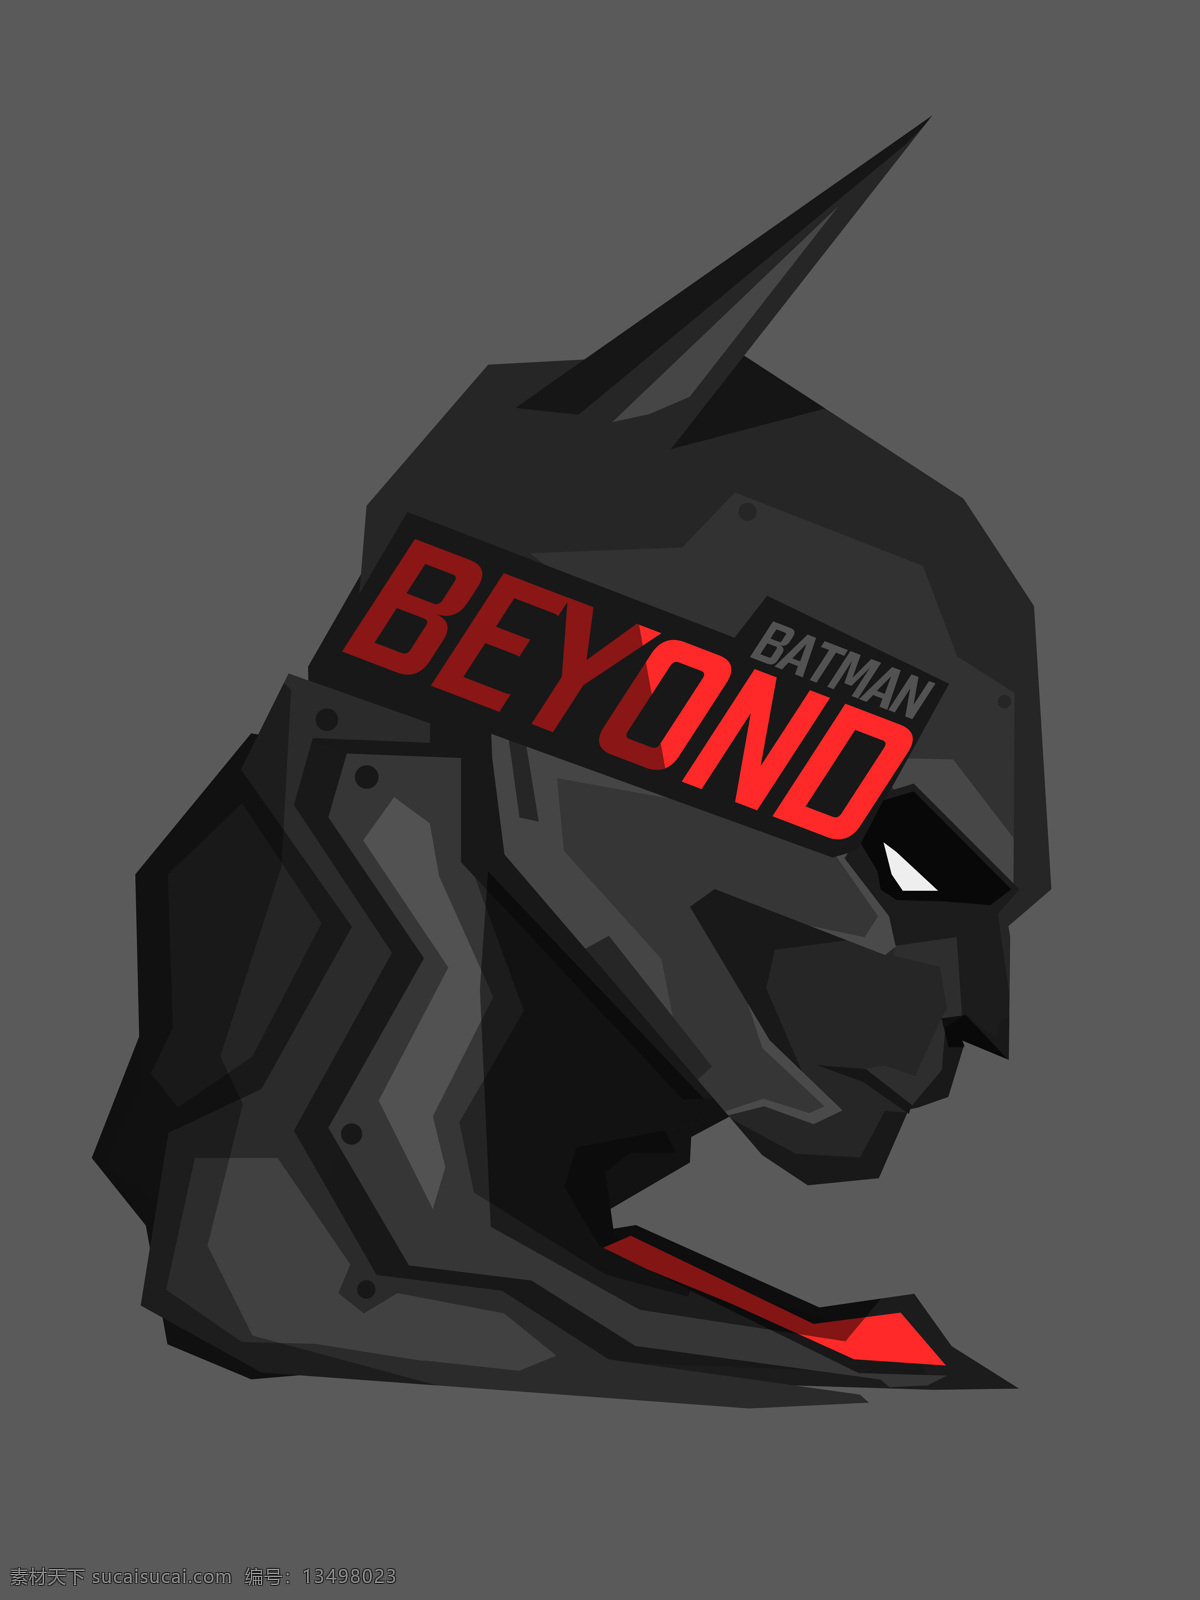 未来蝙蝠侠 batman beyond 超级英雄 漫画英雄 装饰画 高清素材 文化艺术 影视娱乐